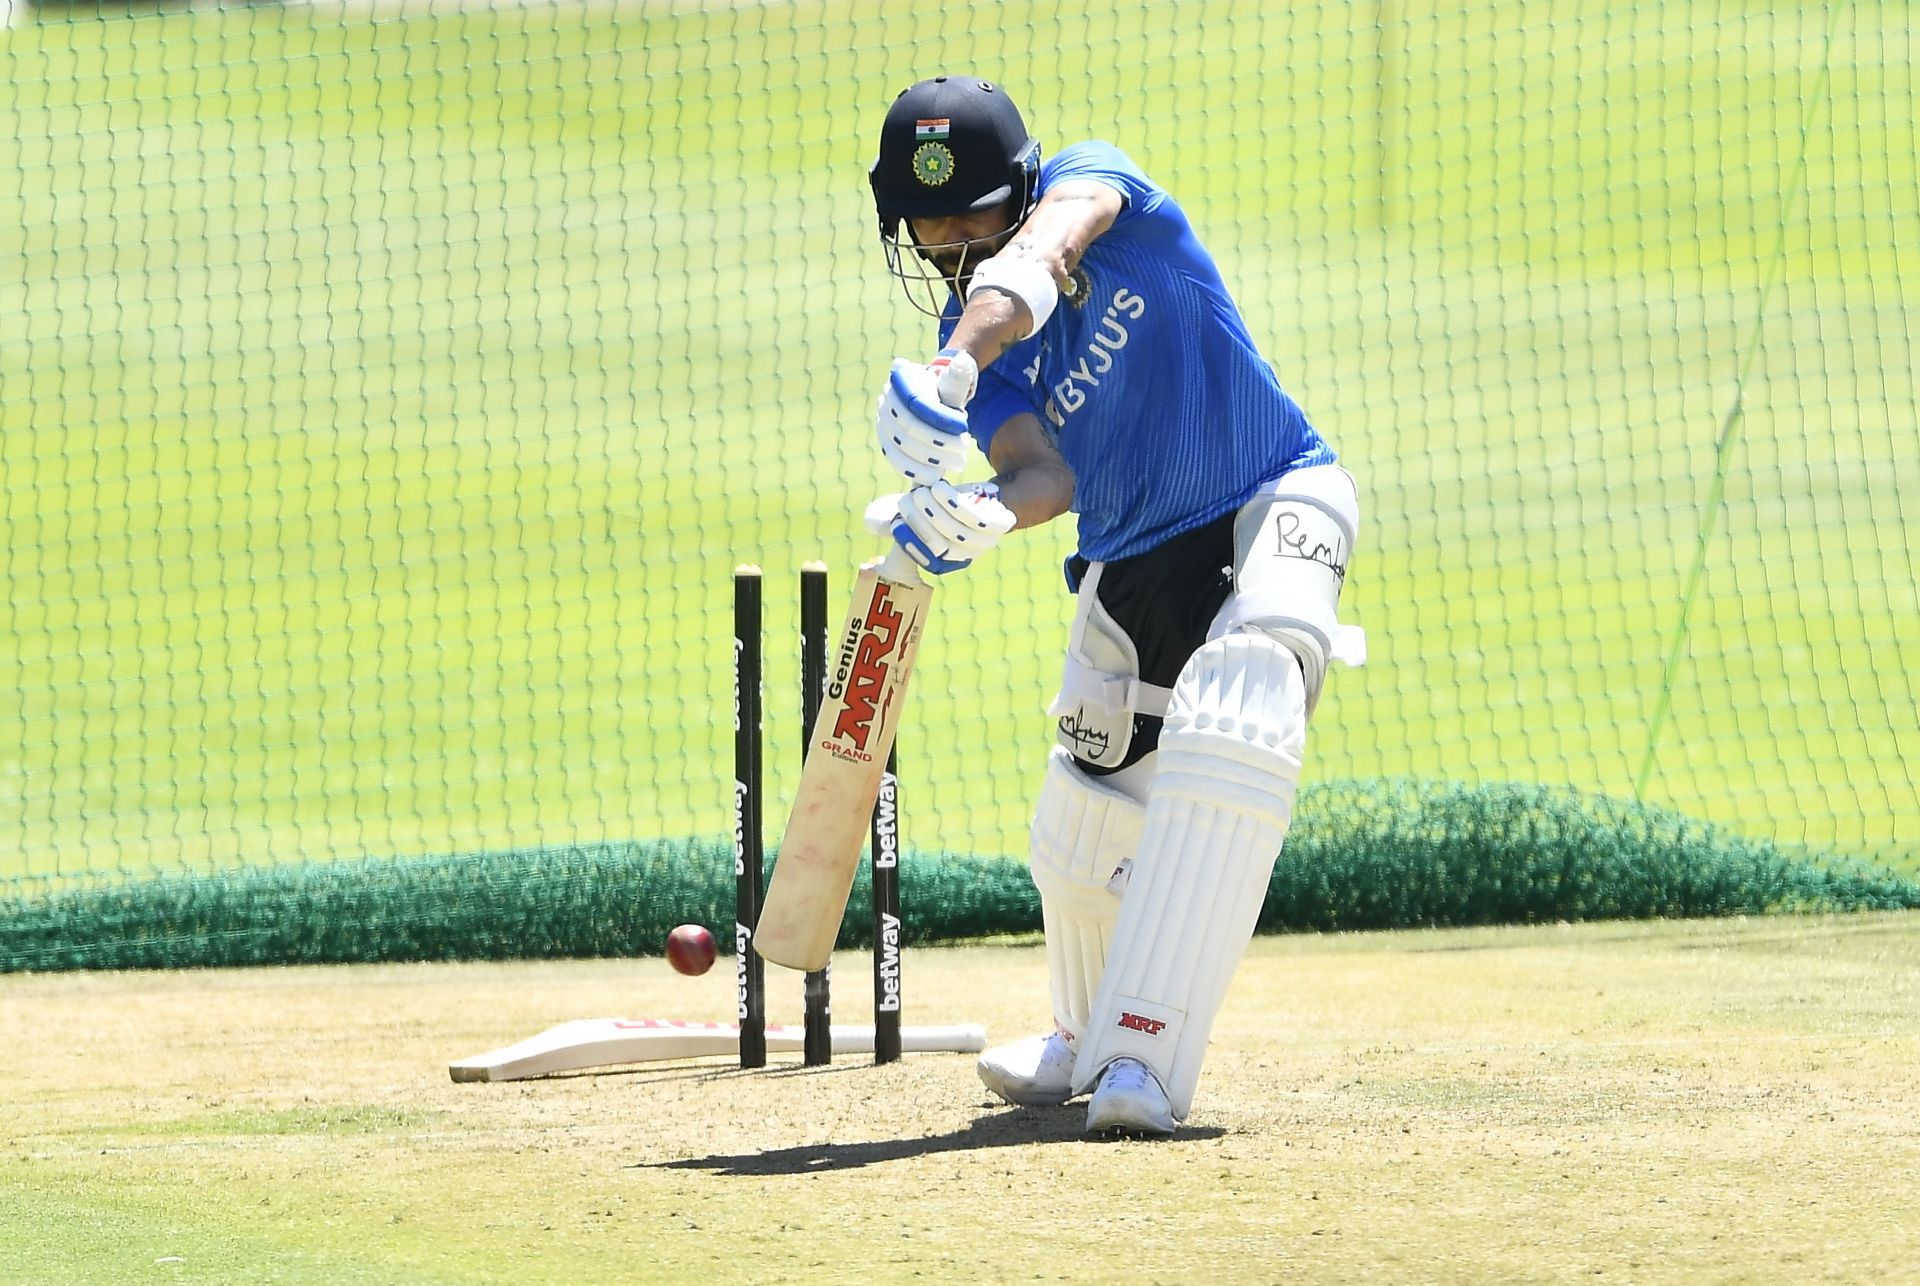 Virat Kohli averages an outstanding 58.77 in ODI cricket